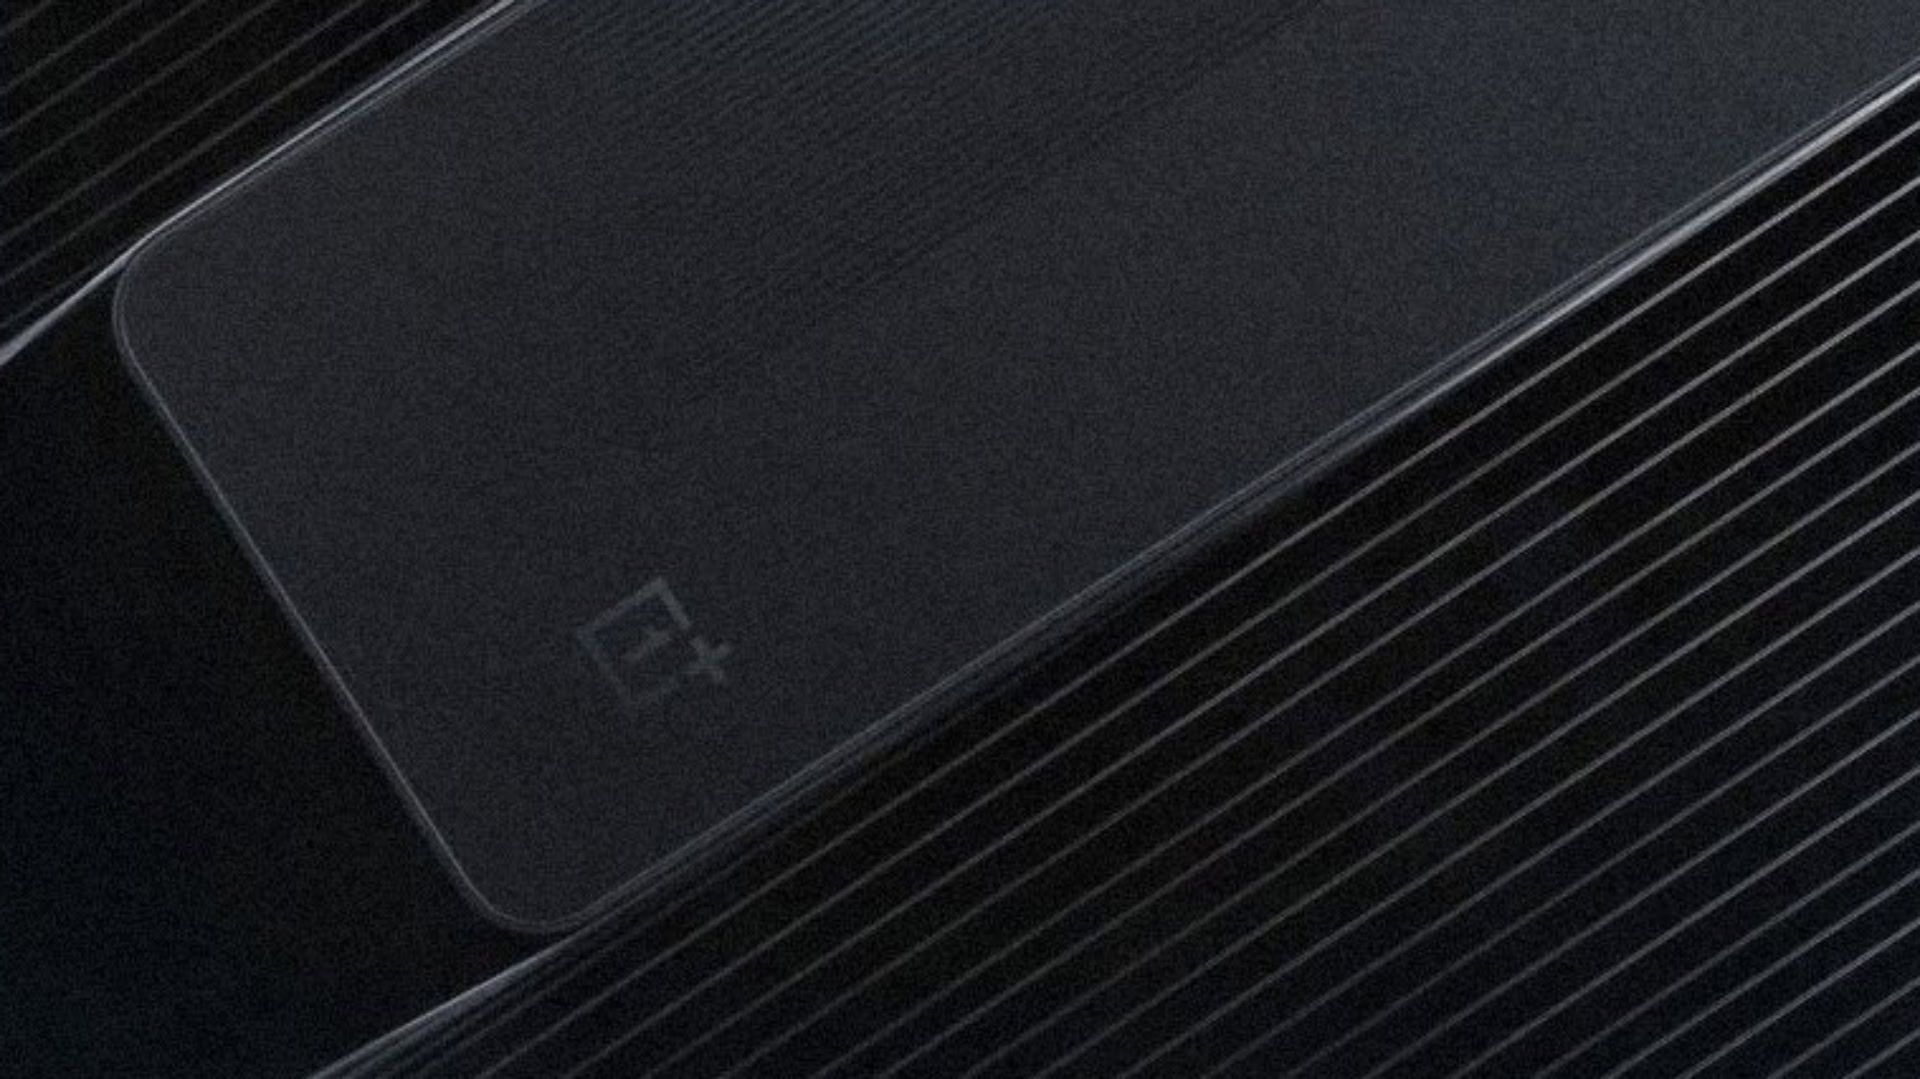 OnePlus 10R alleged leak